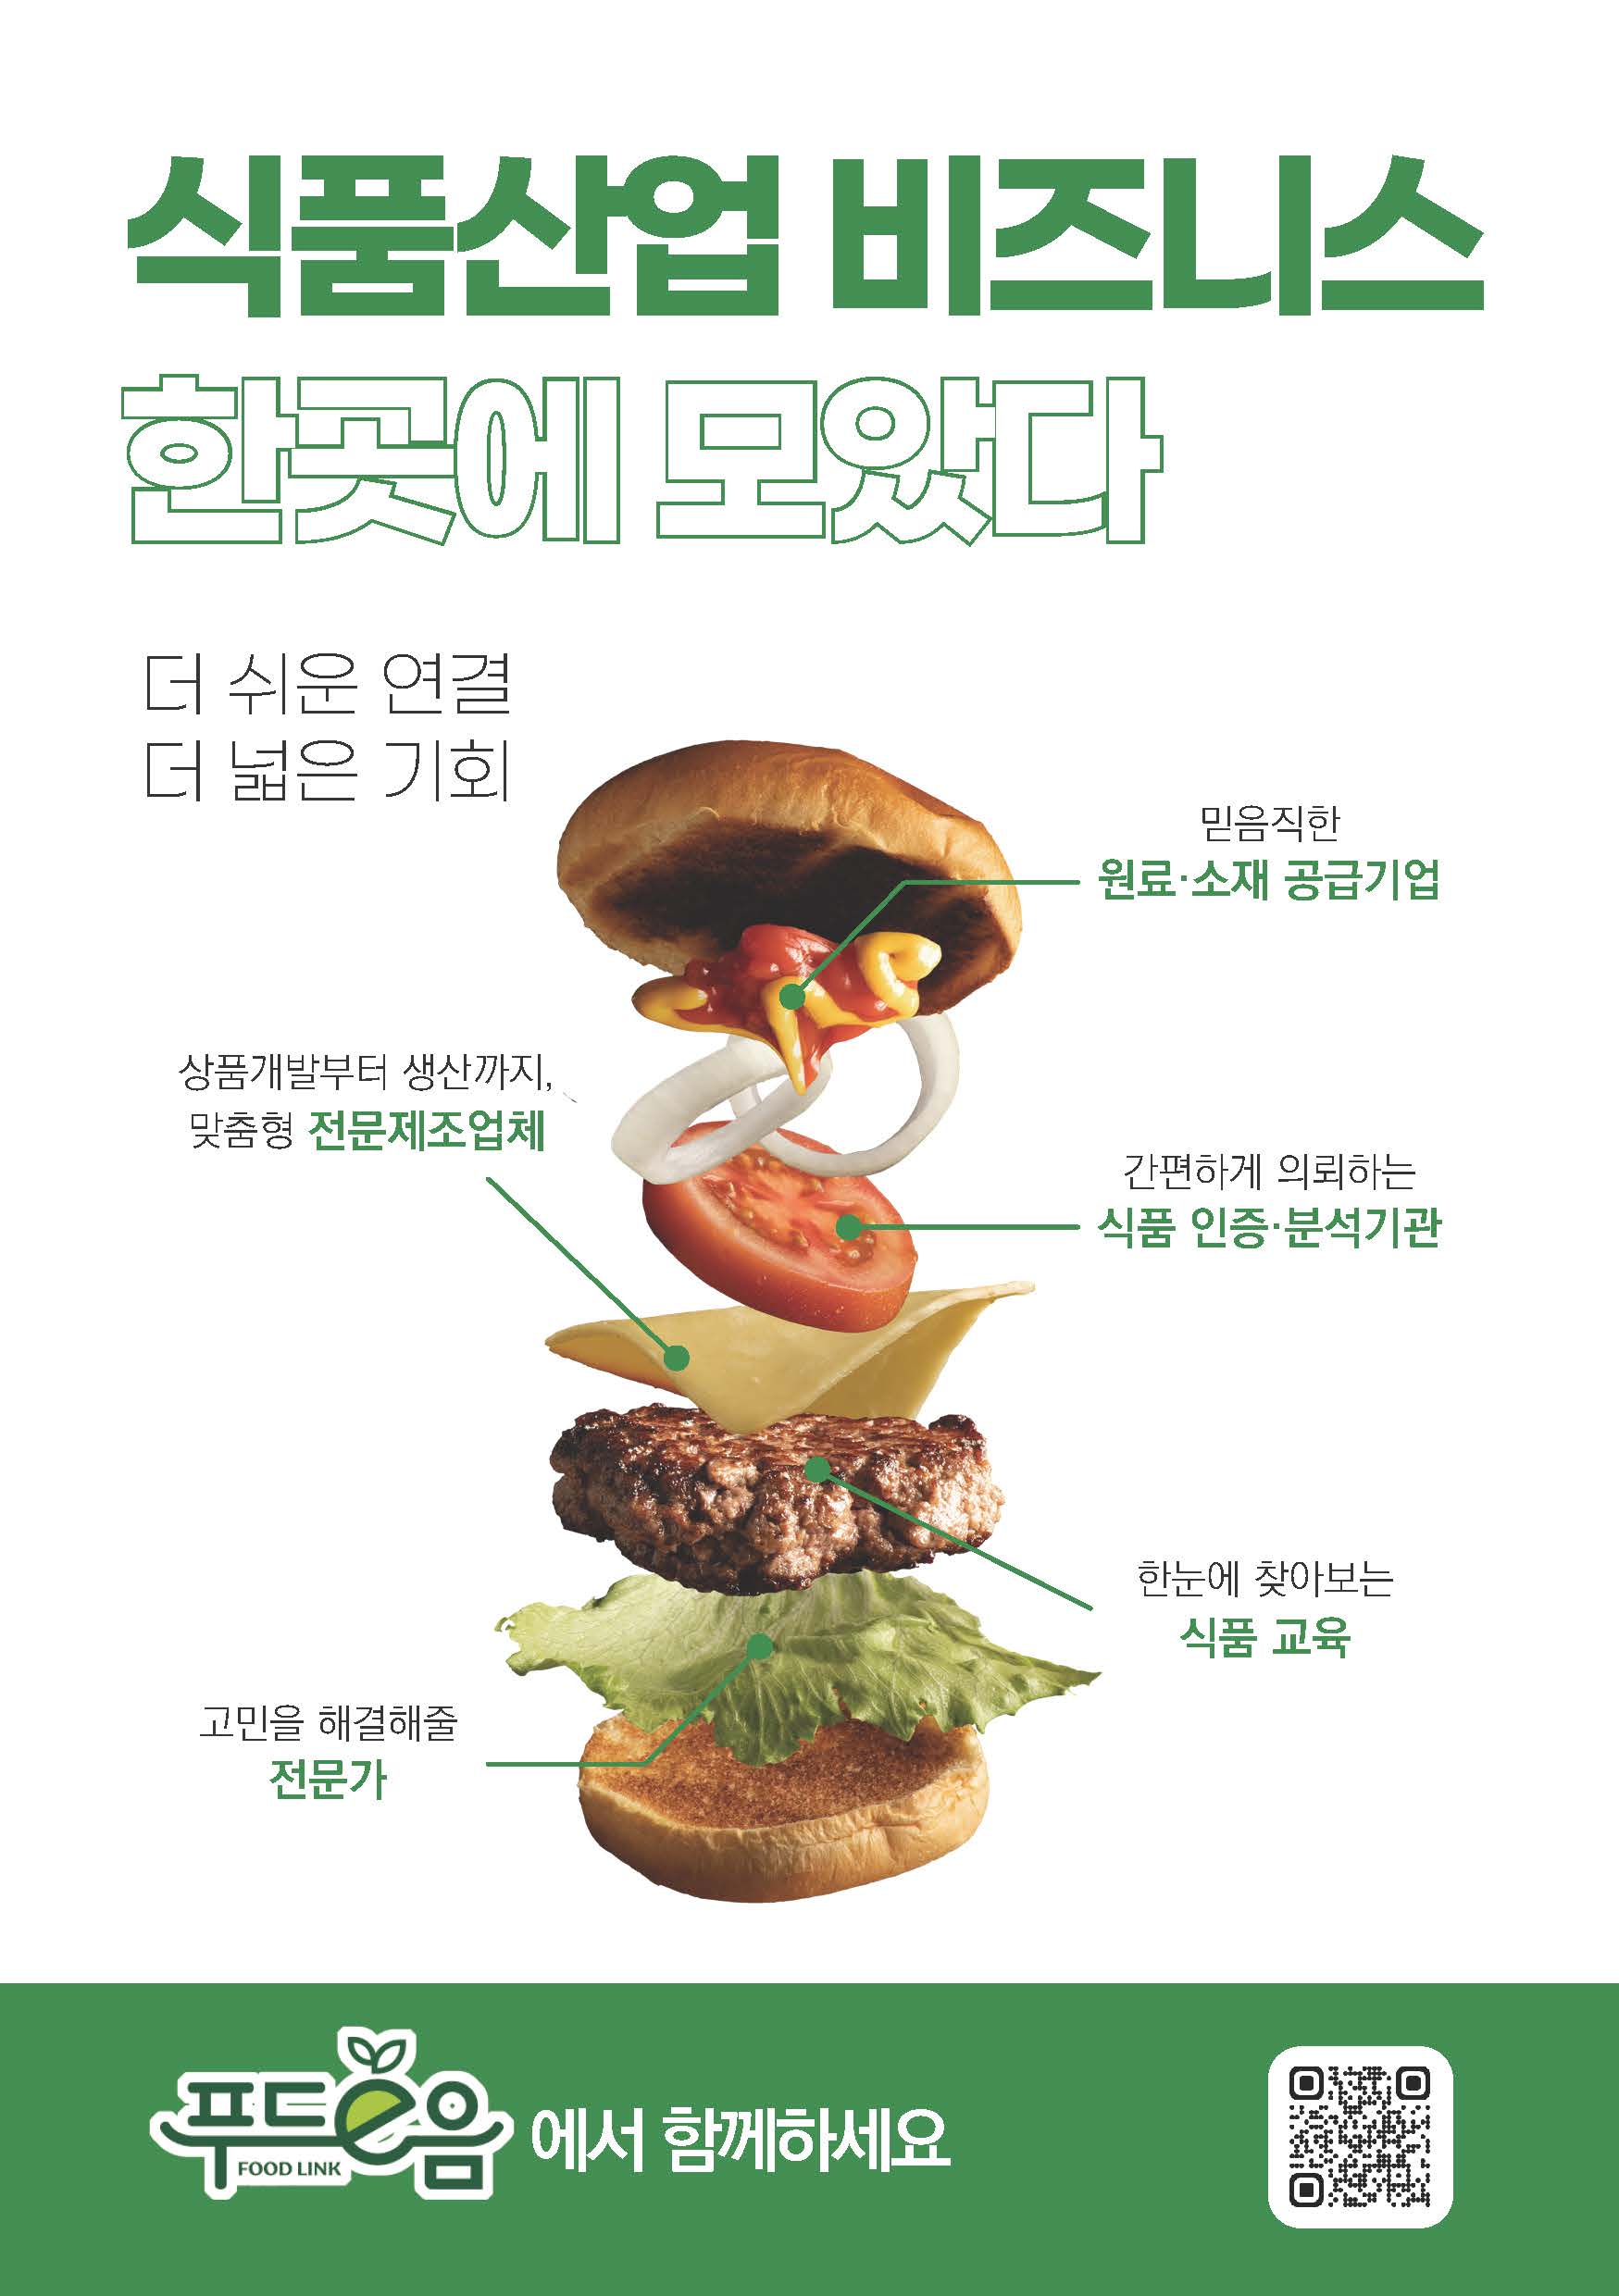 (05.28) 식품진흥원, 디지털 식품정보 플랫폼 오픈_1